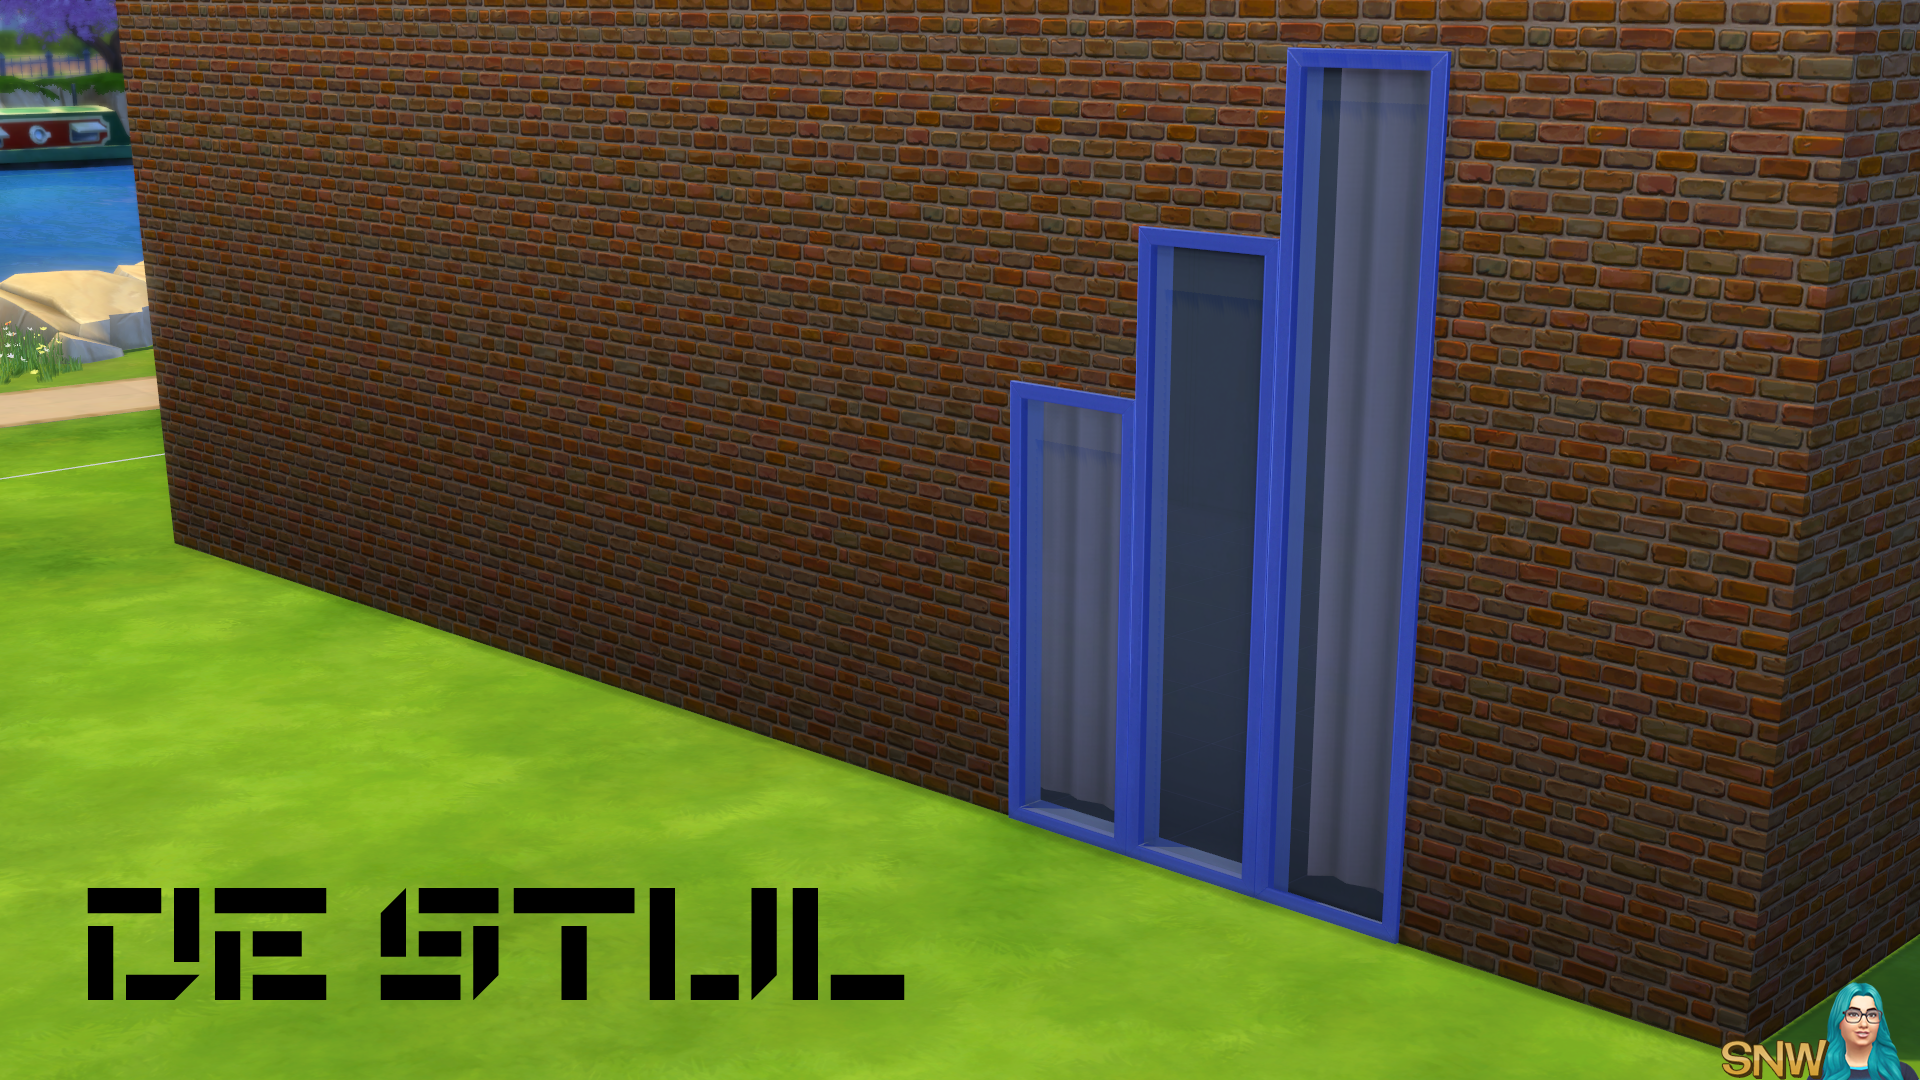 De Stijl Windows for The Sims 4